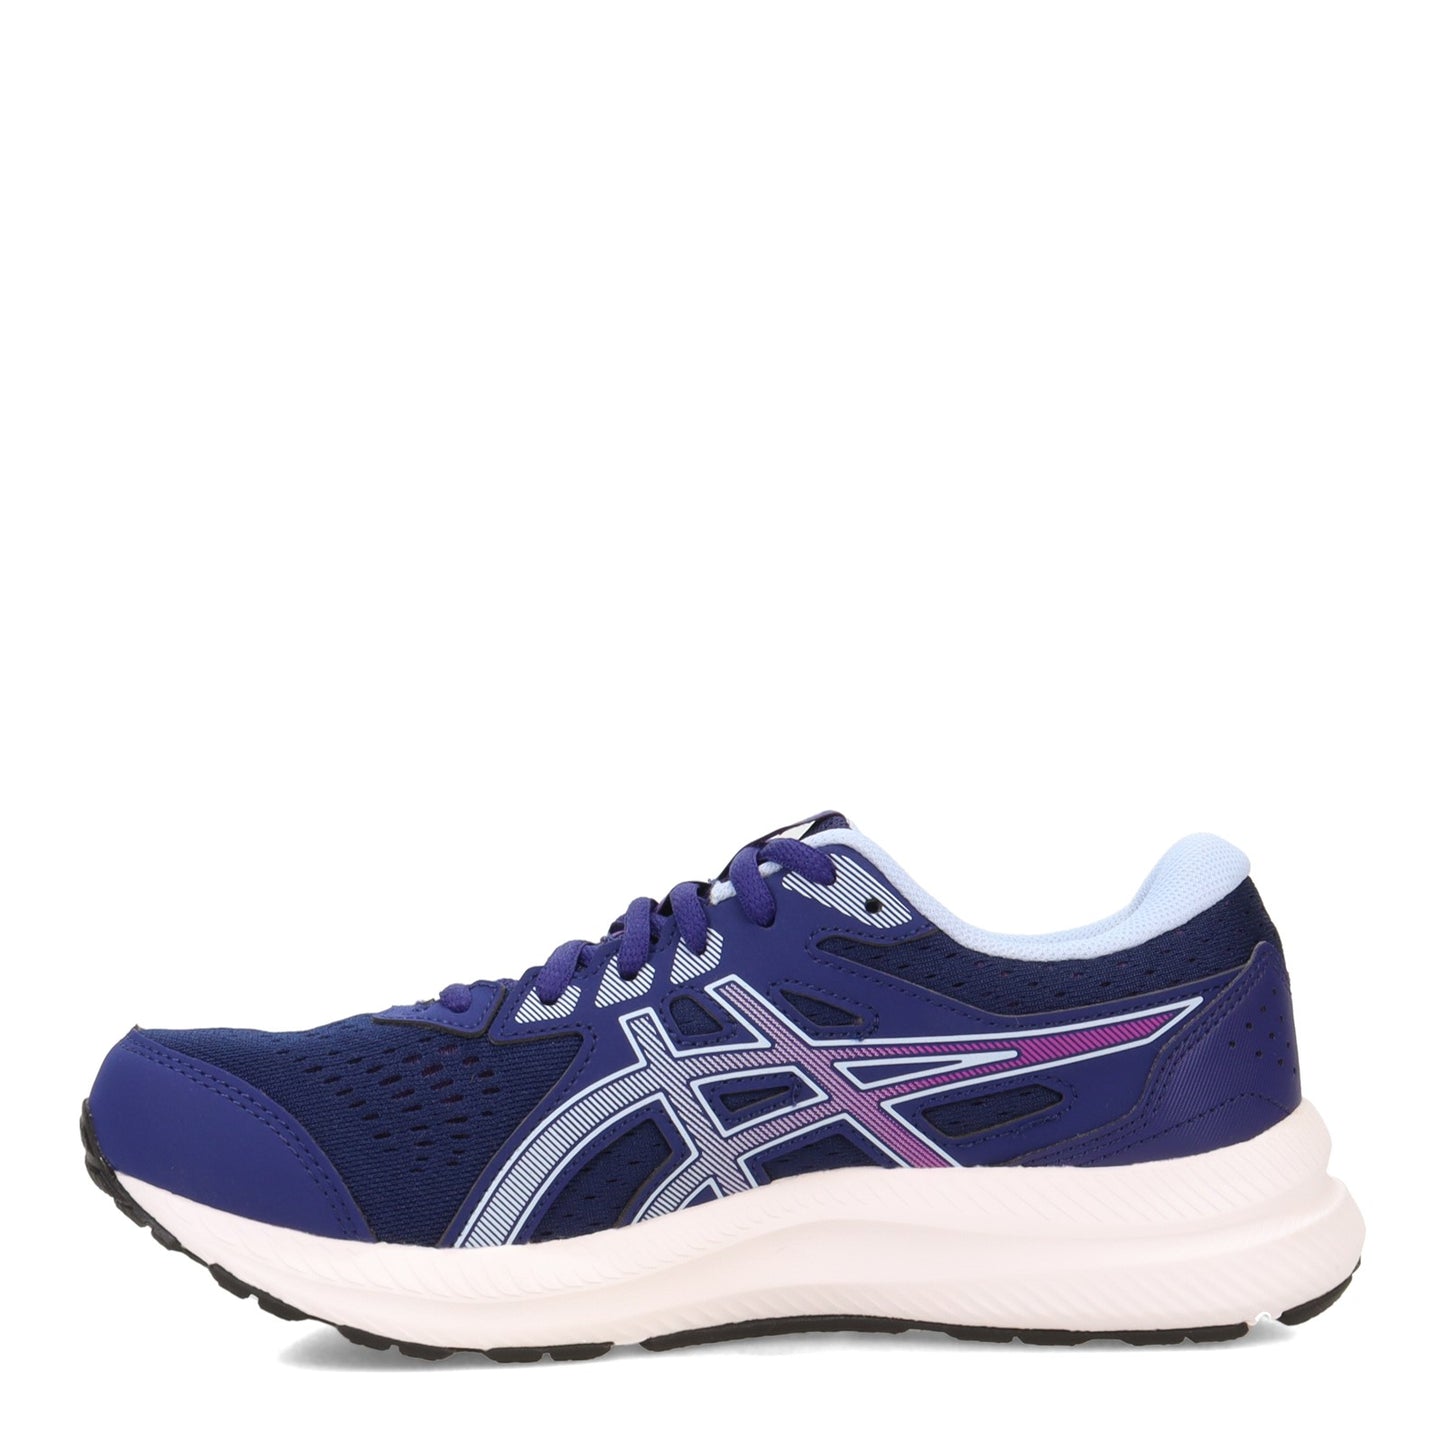 Peltz Shoes  Women's ASICS GEL-Contend 8 Running Shoe - Wide Width BLUE 1012B319.402